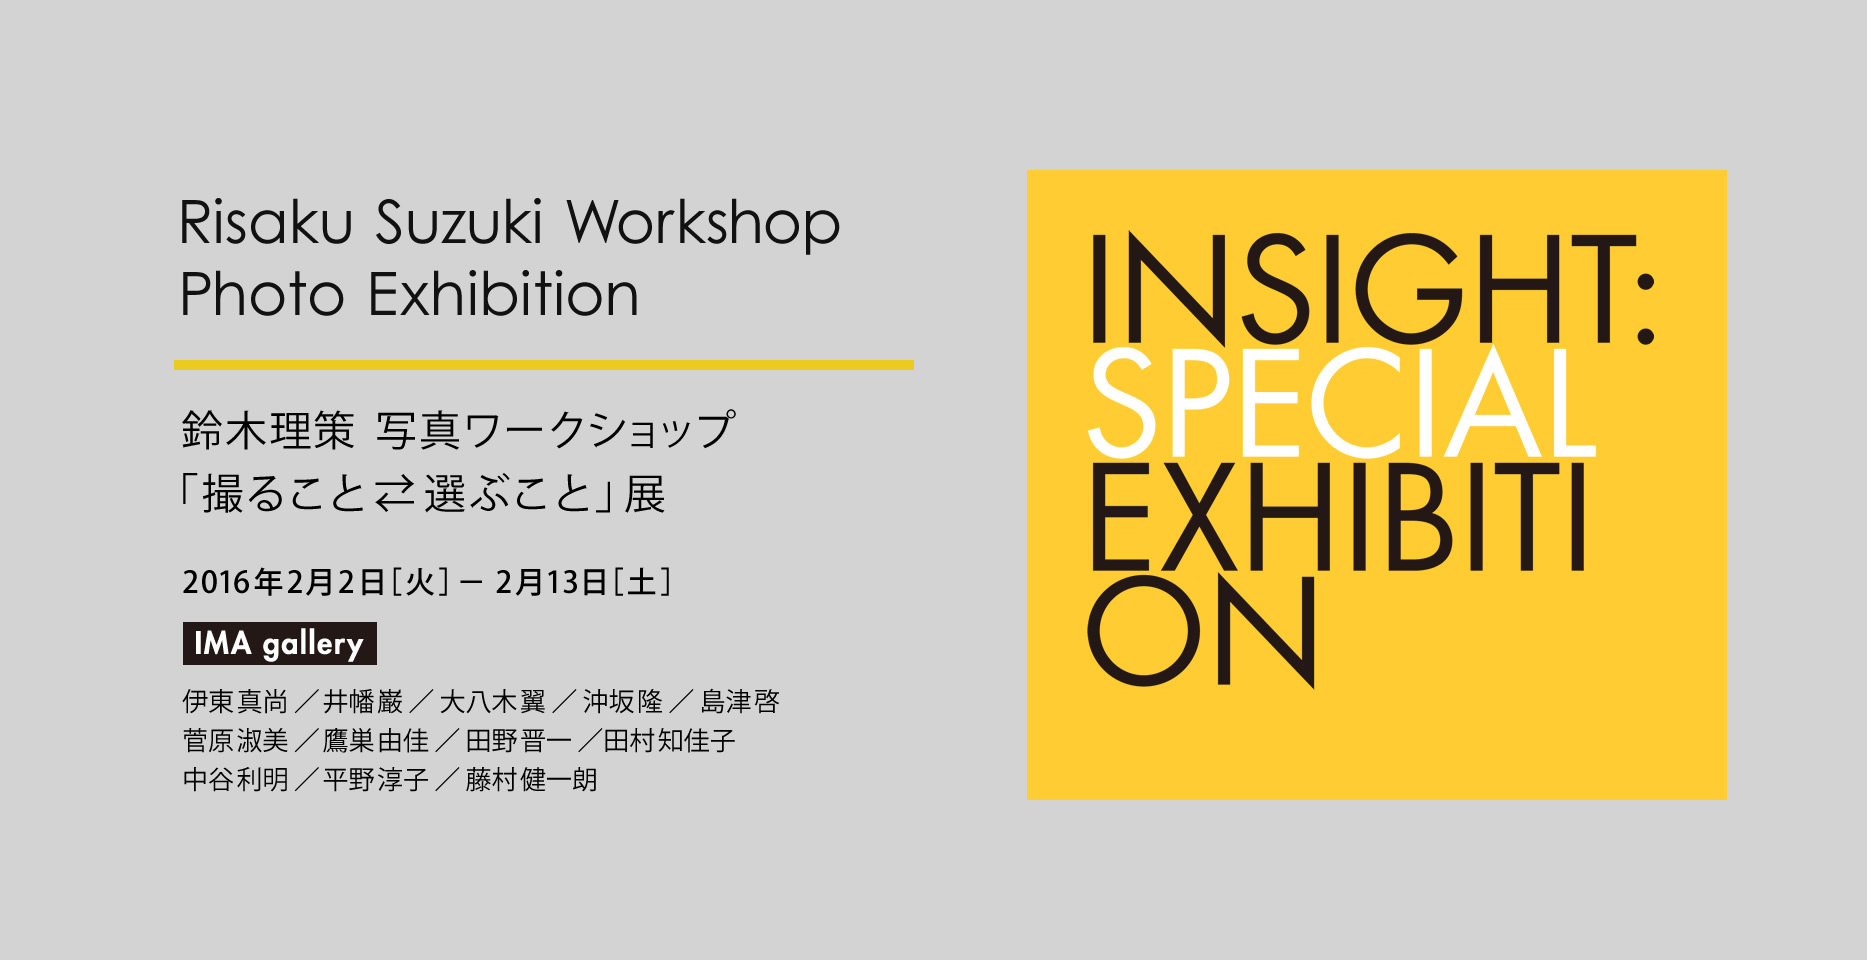 Risaku Suzuki Workshop Photo Exhibition